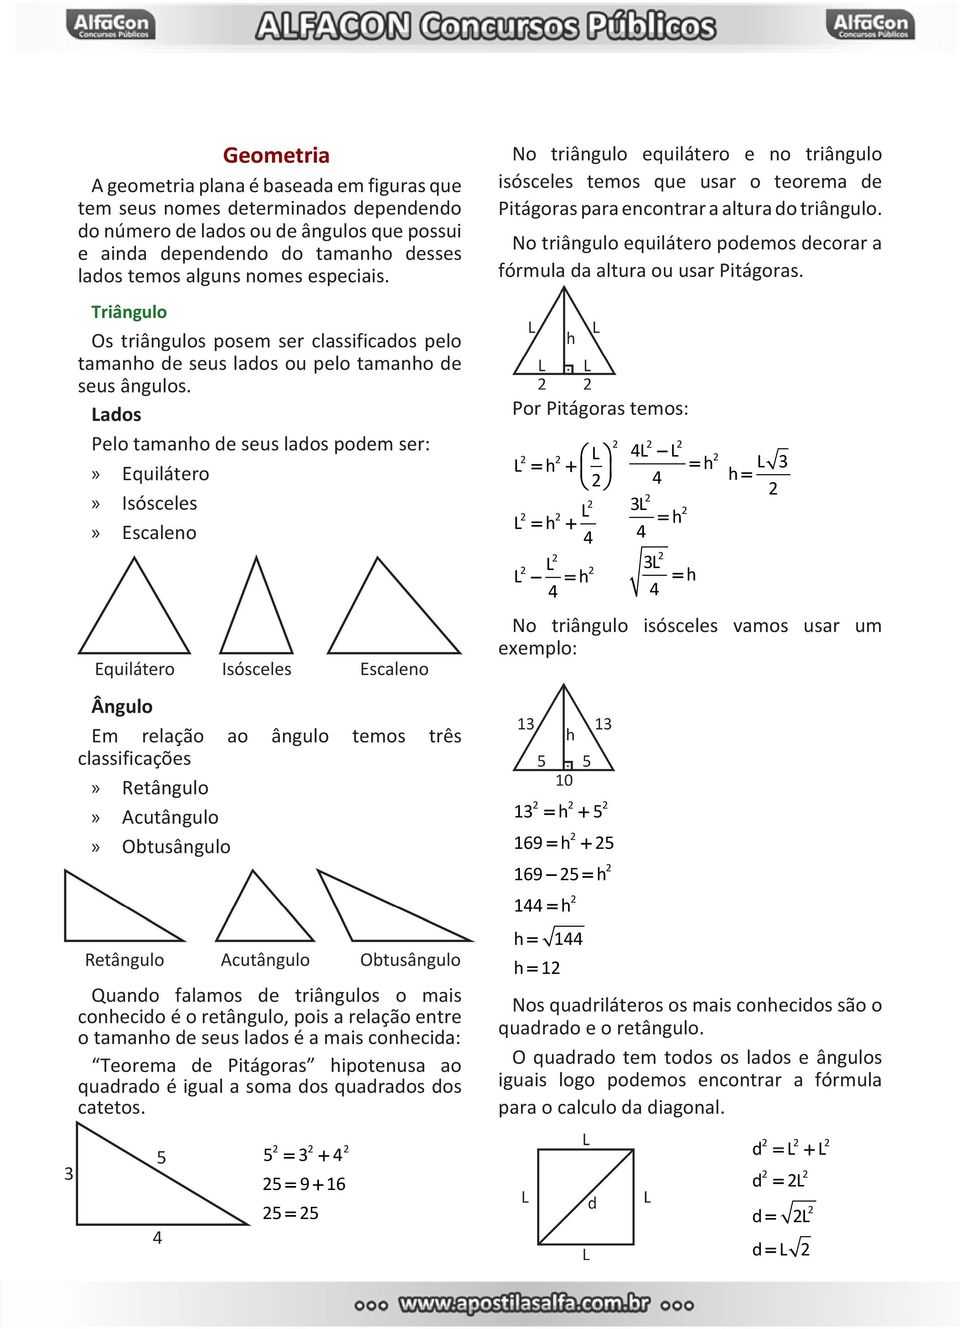 Lados Pelo tamanho de seus lados podem ser: Equilátero Isósceles Escaleno No triângulo equilátero e no triângulo isósceles temos que usar o teorema de Pitágoras para encontrar a altura do triângulo.